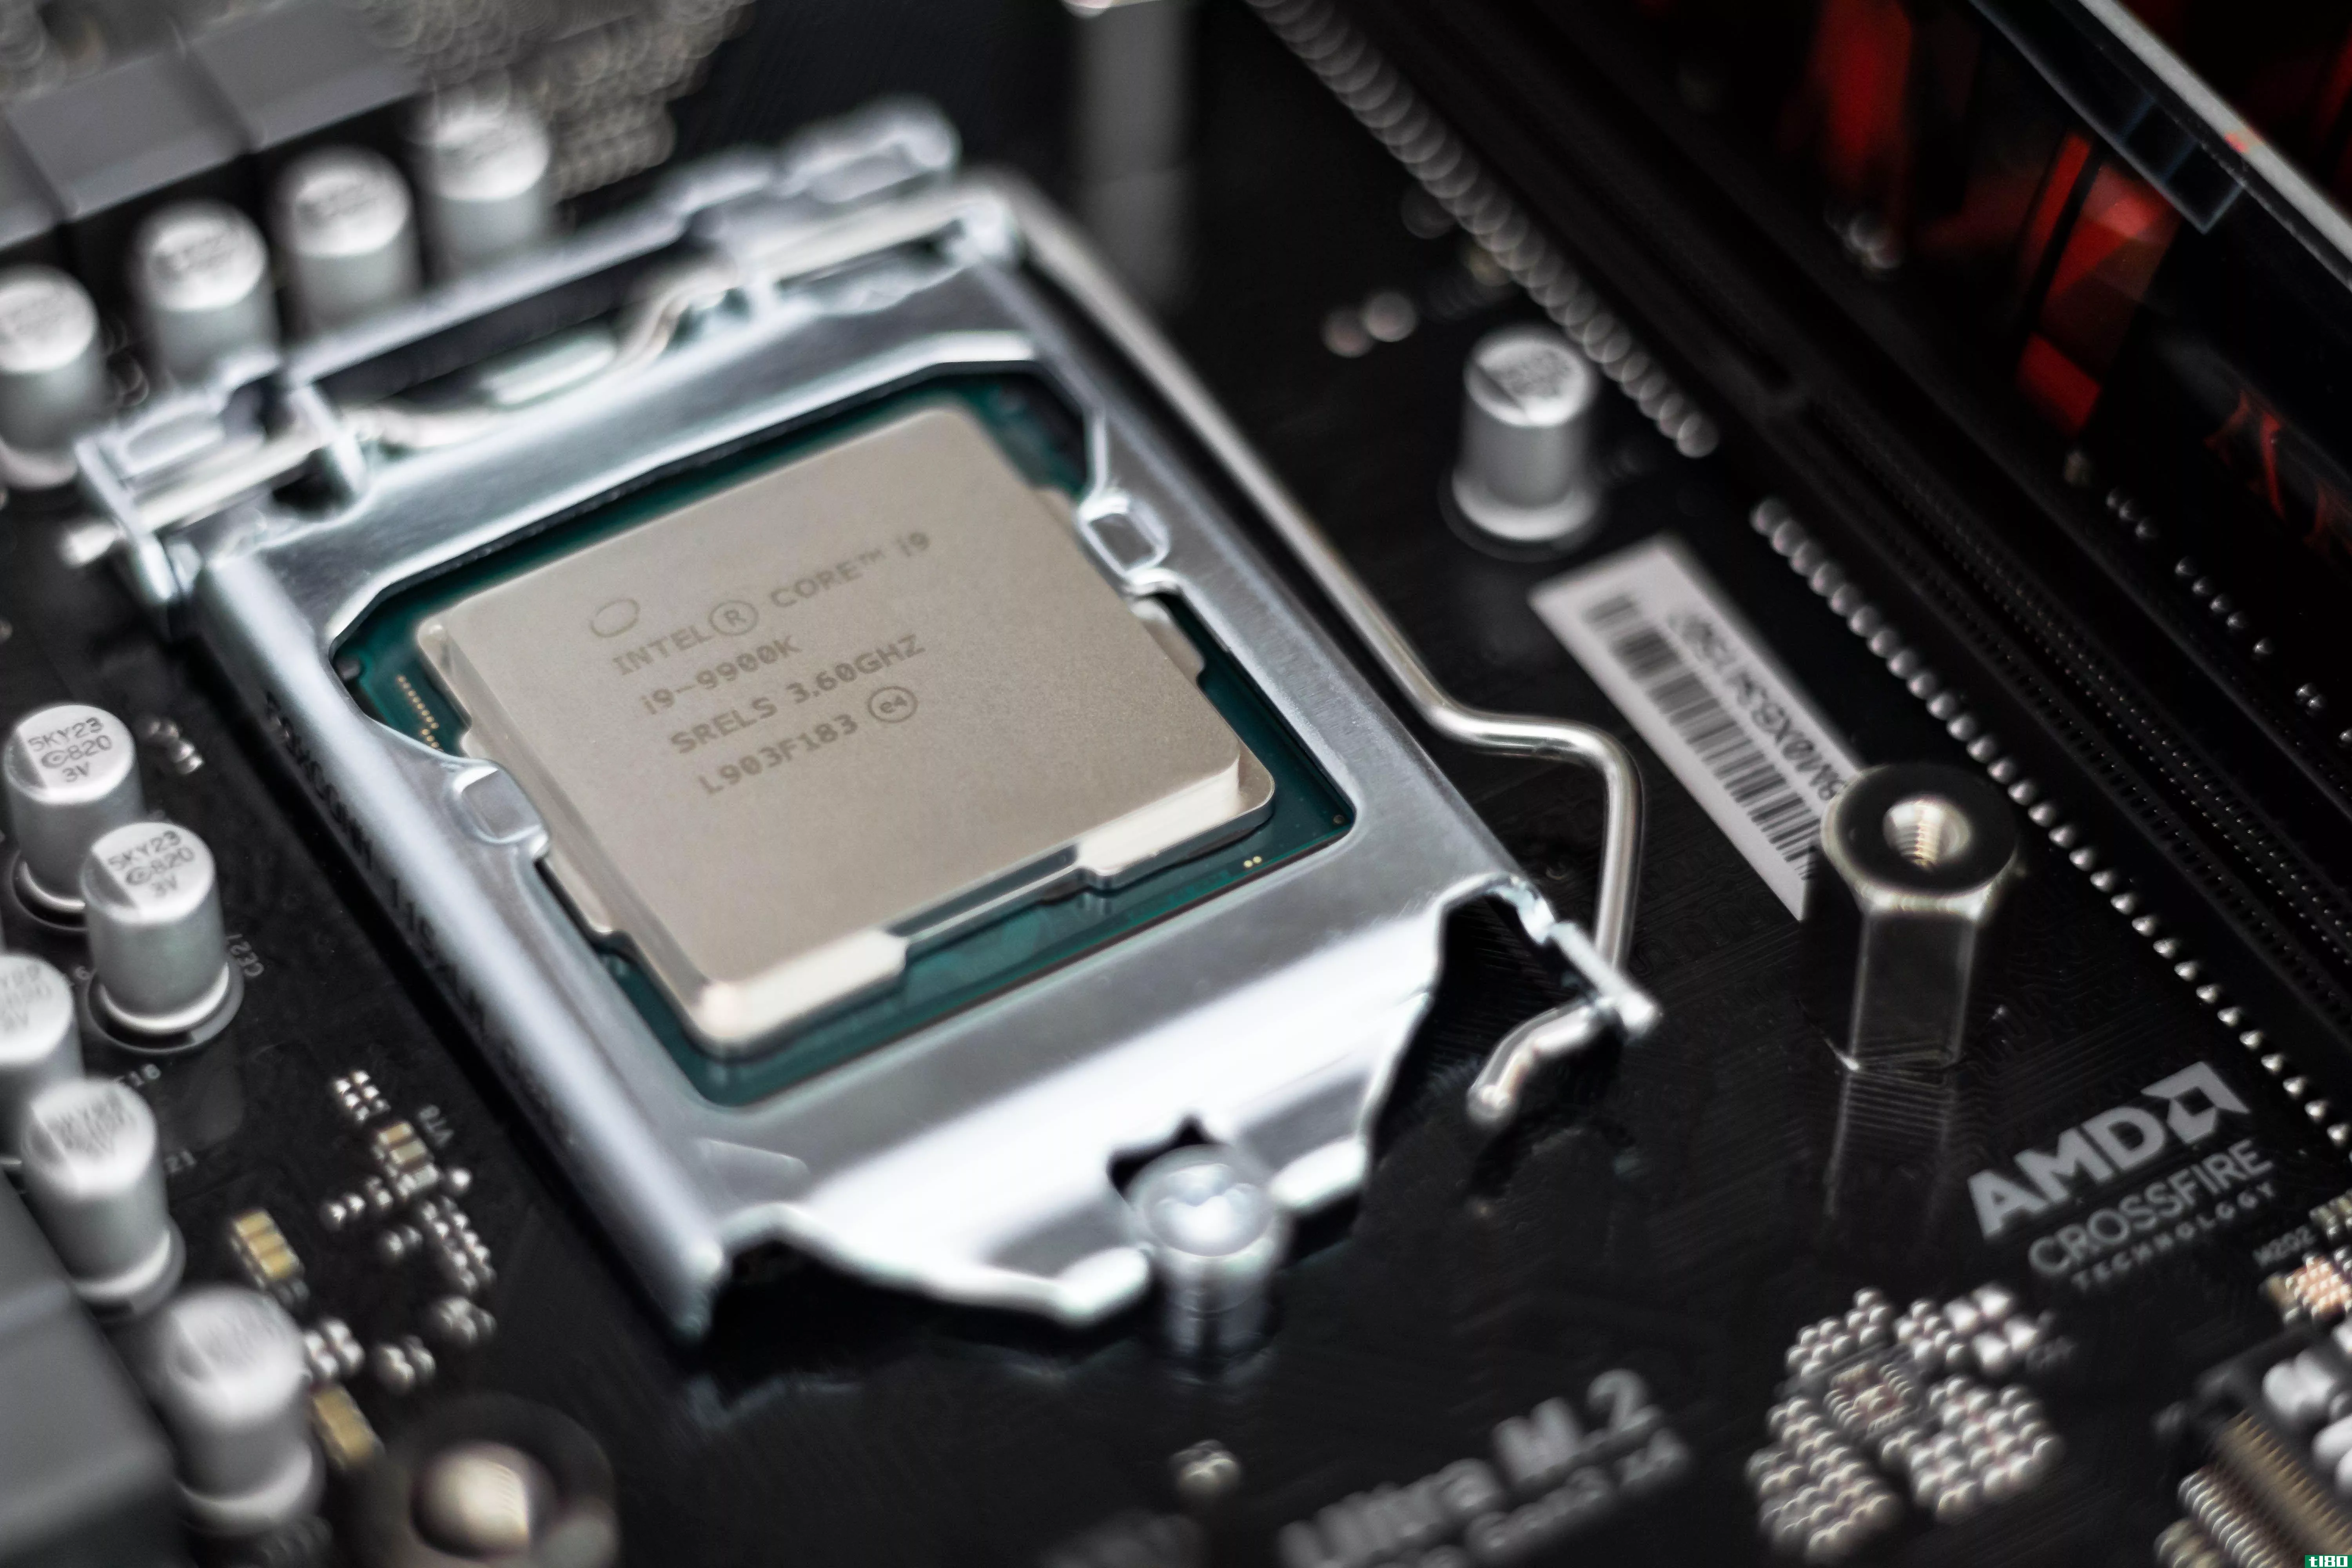 Intel Core i9 CPU